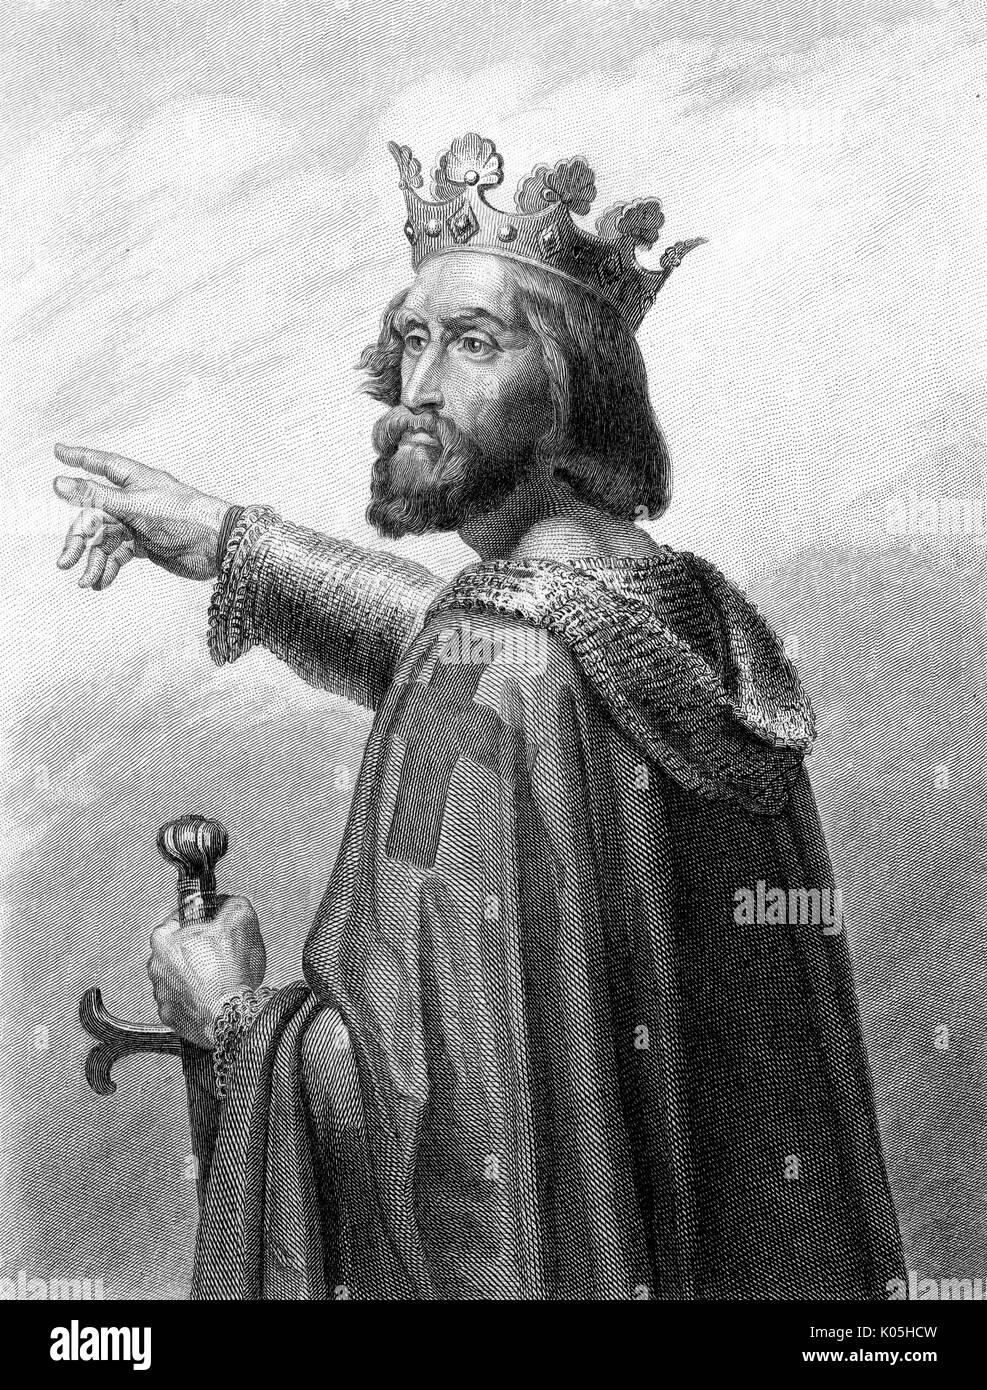 Raymond IV di Tolosa (1041 o 1042 -1105), noto anche come Raymond di Saint-Gilles, conte di Tolosa, duca di Narbonne, margravio di Provenza e uno dei capi della prima crociata. Data: xi secolo Foto Stock